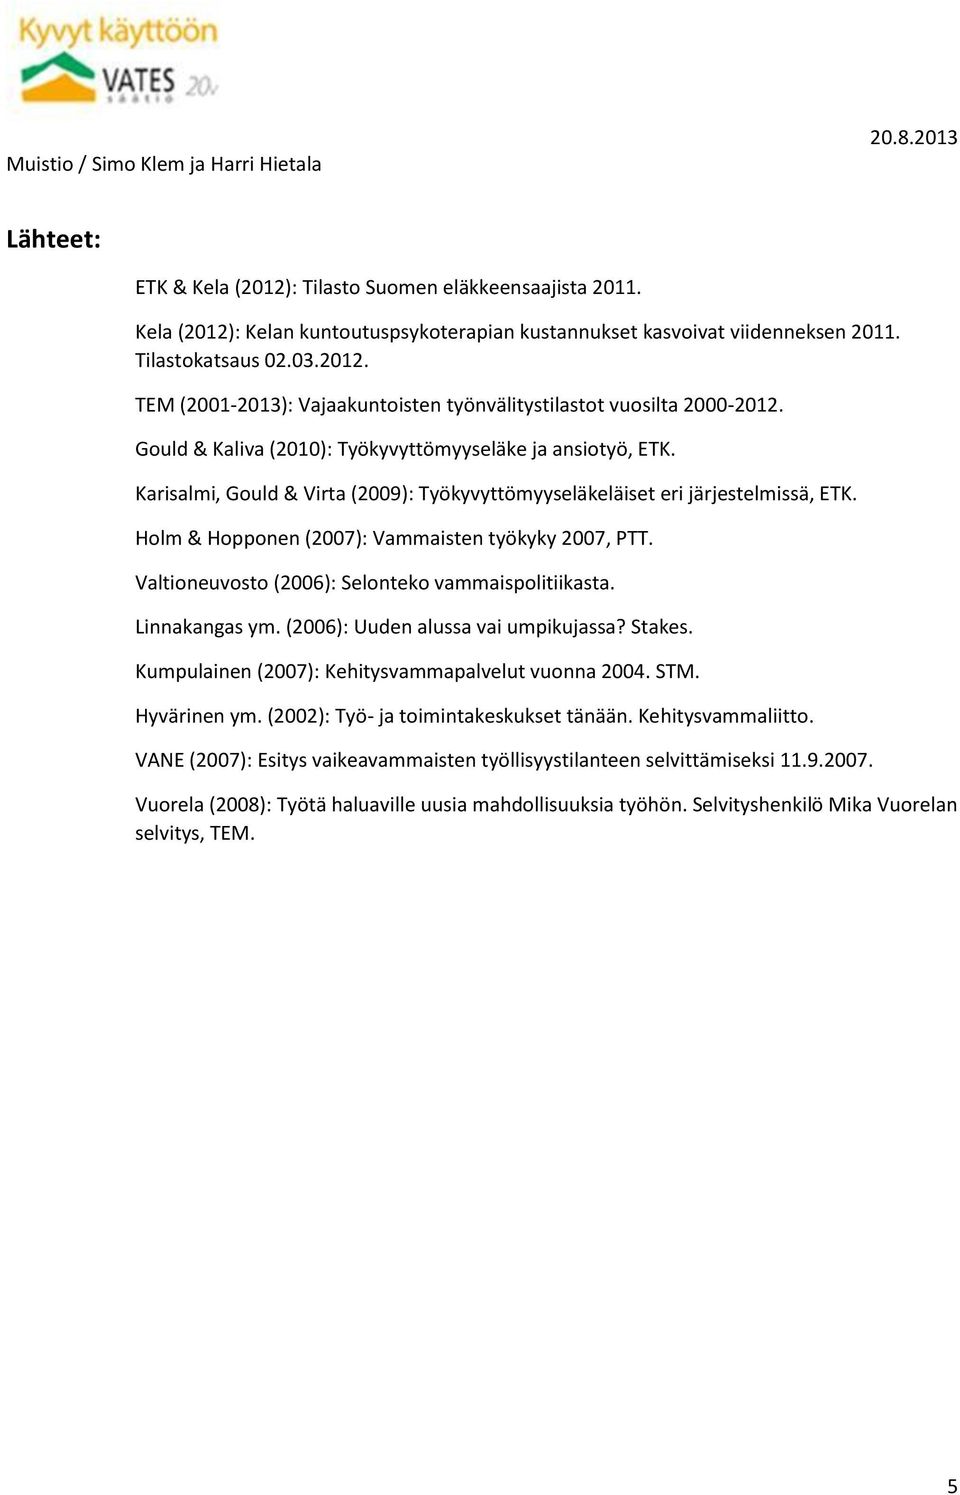 Valtioneuvosto (2006): Selonteko vammaispolitiikasta. Linnakangas ym. (2006): Uuden alussa vai umpikujassa? Stakes. Kumpulainen (2007): Kehitysvammapalvelut vuonna 2004. STM. Hyvärinen ym.